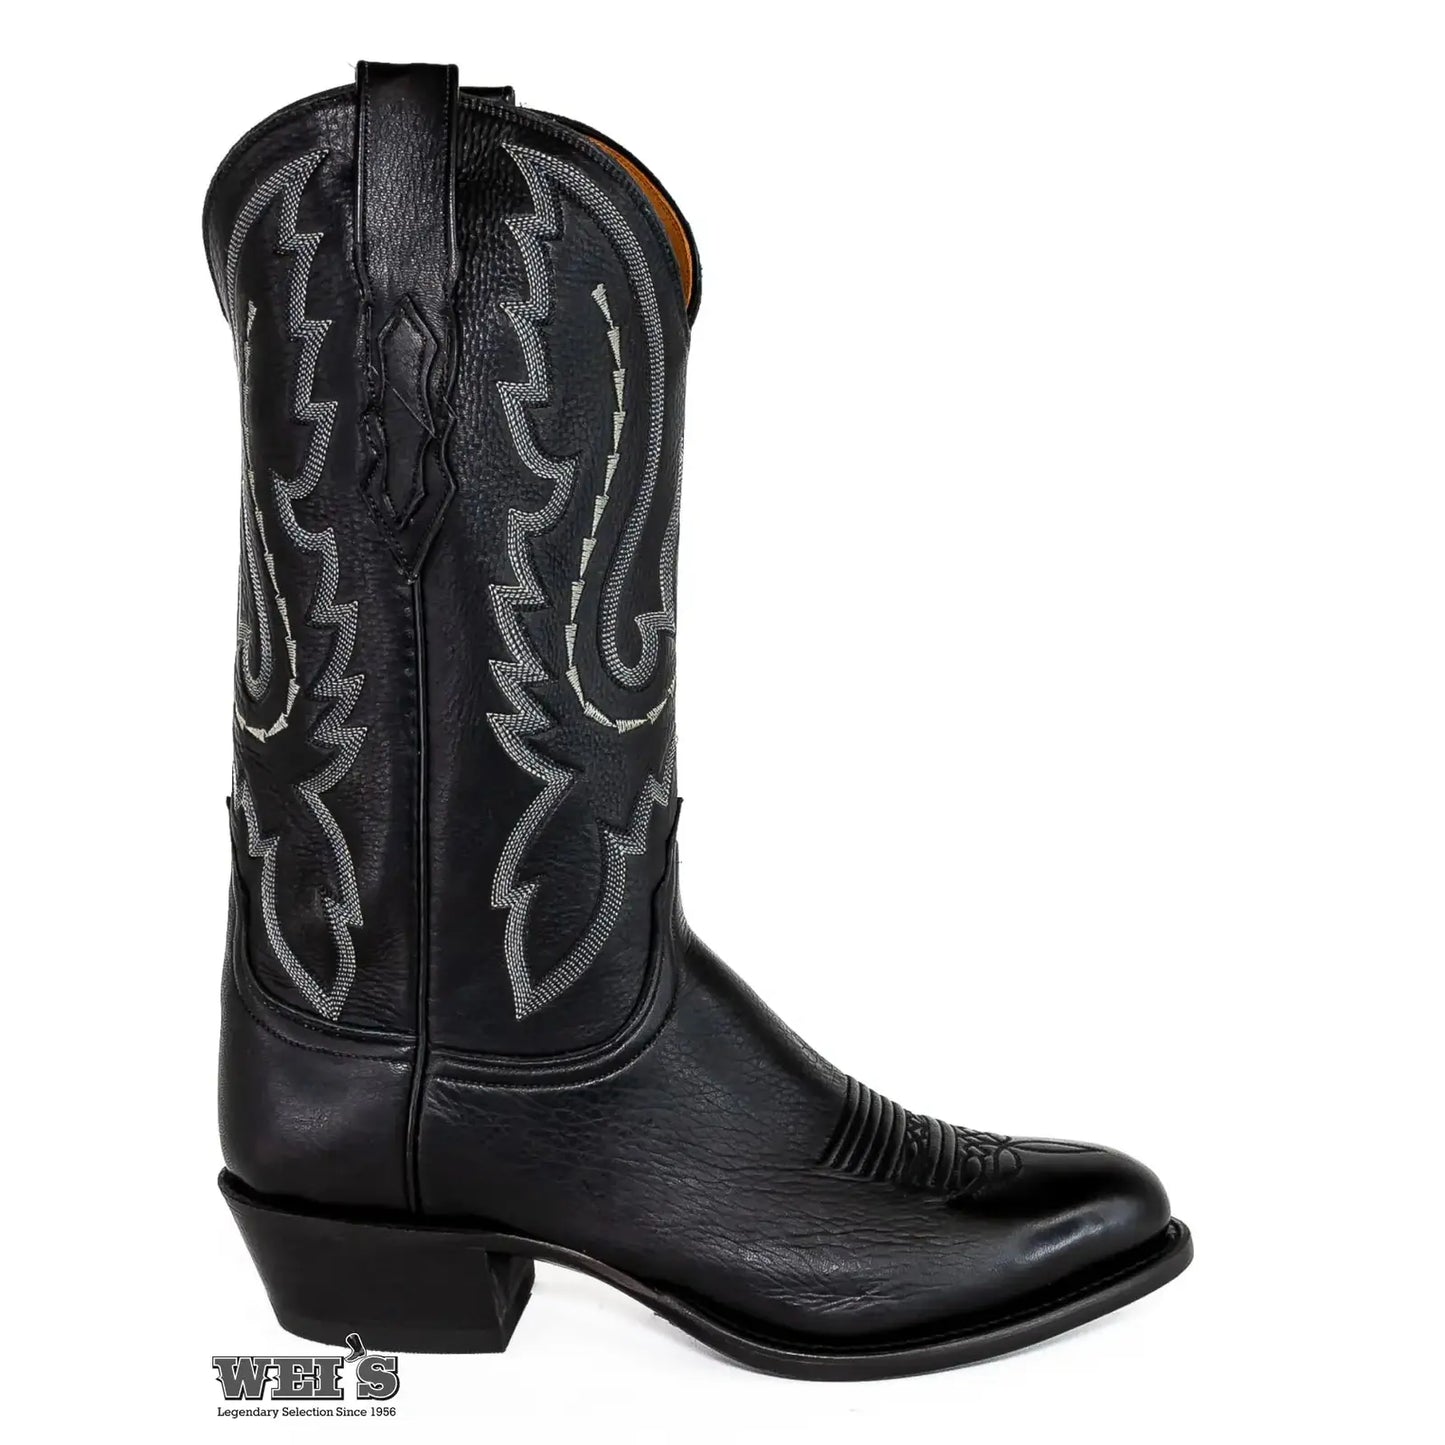 Lucchese 2000 Men's Cowboy Boots 14" Elk T3000.R4